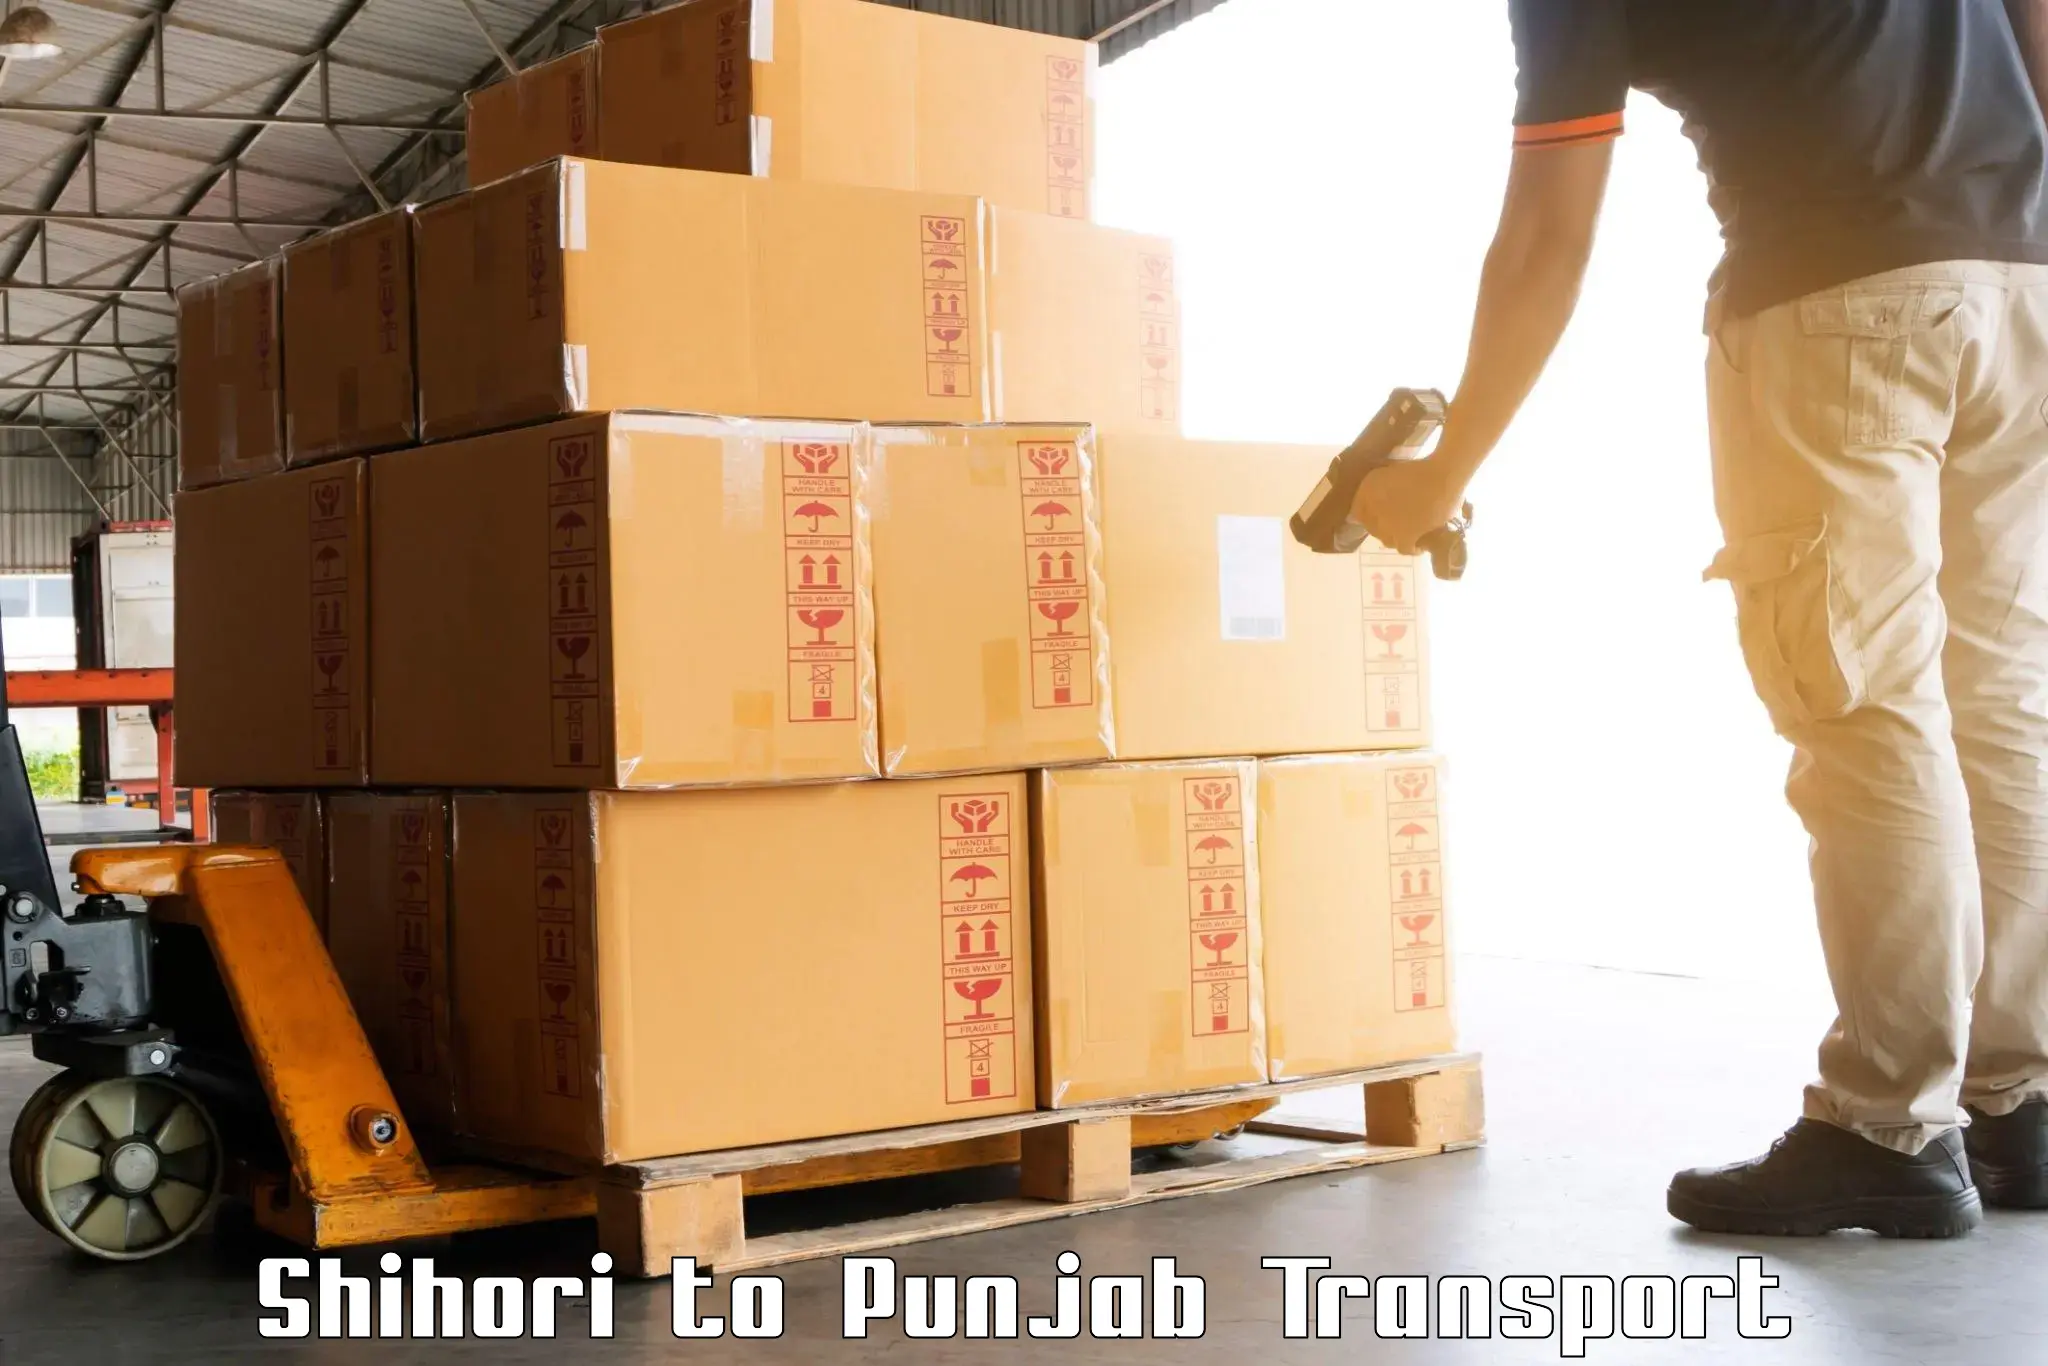 Online transport booking Shihori to Zirakpur